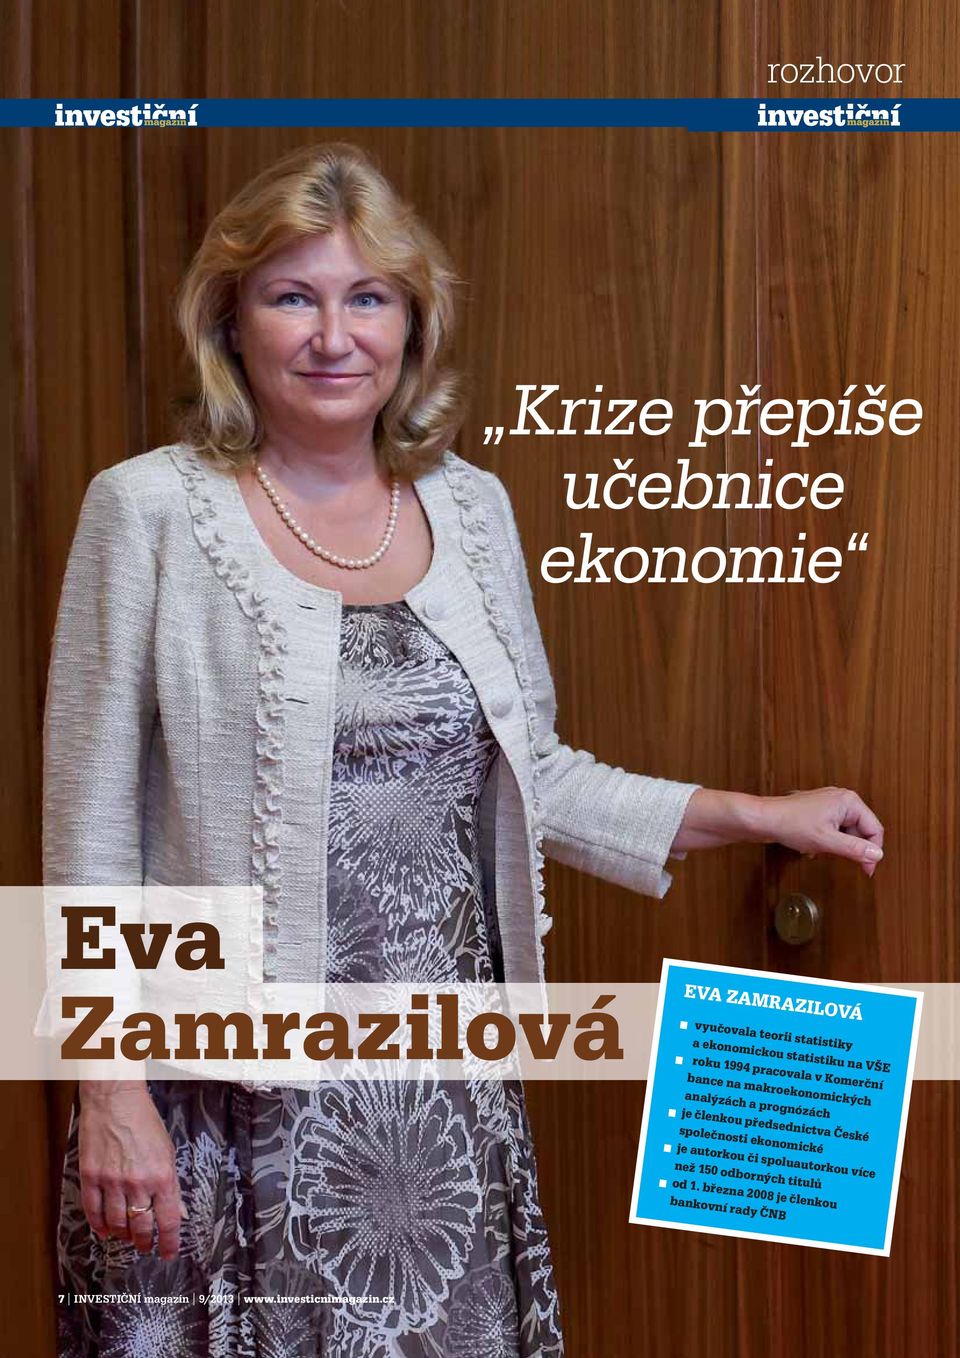 České společnosti ekonomické je autorkou či spoluautorkou více než 150 odborných titulů od 1 března 2008 je členkou